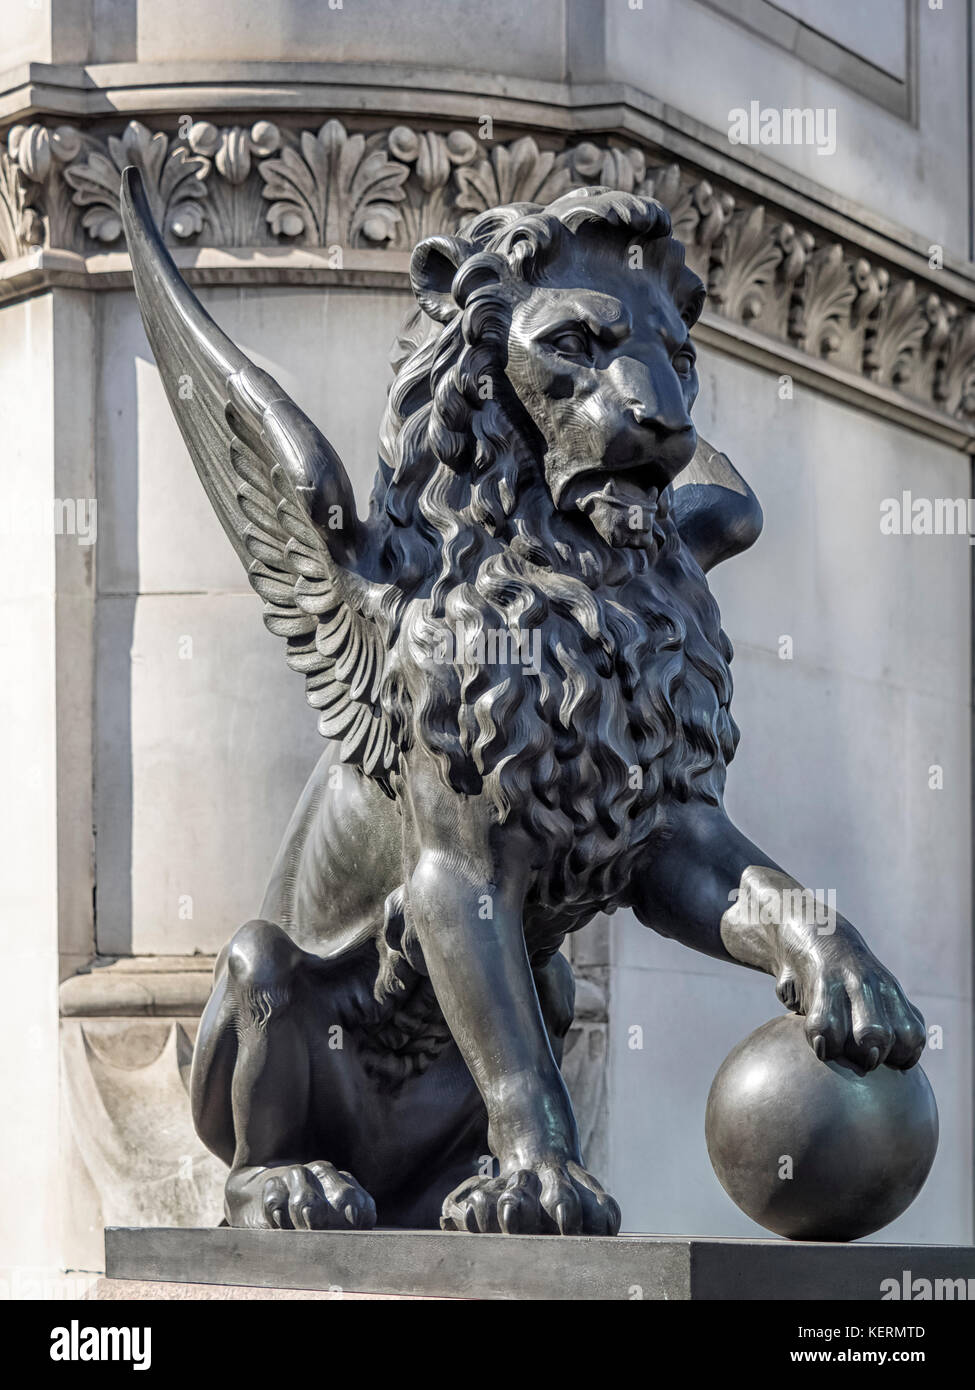 LONDRA, Regno Unito - 25 AGOSTO 2017: Statua del Leone alato, una delle 4 che si trova sul Viadotto di Holborn Foto Stock